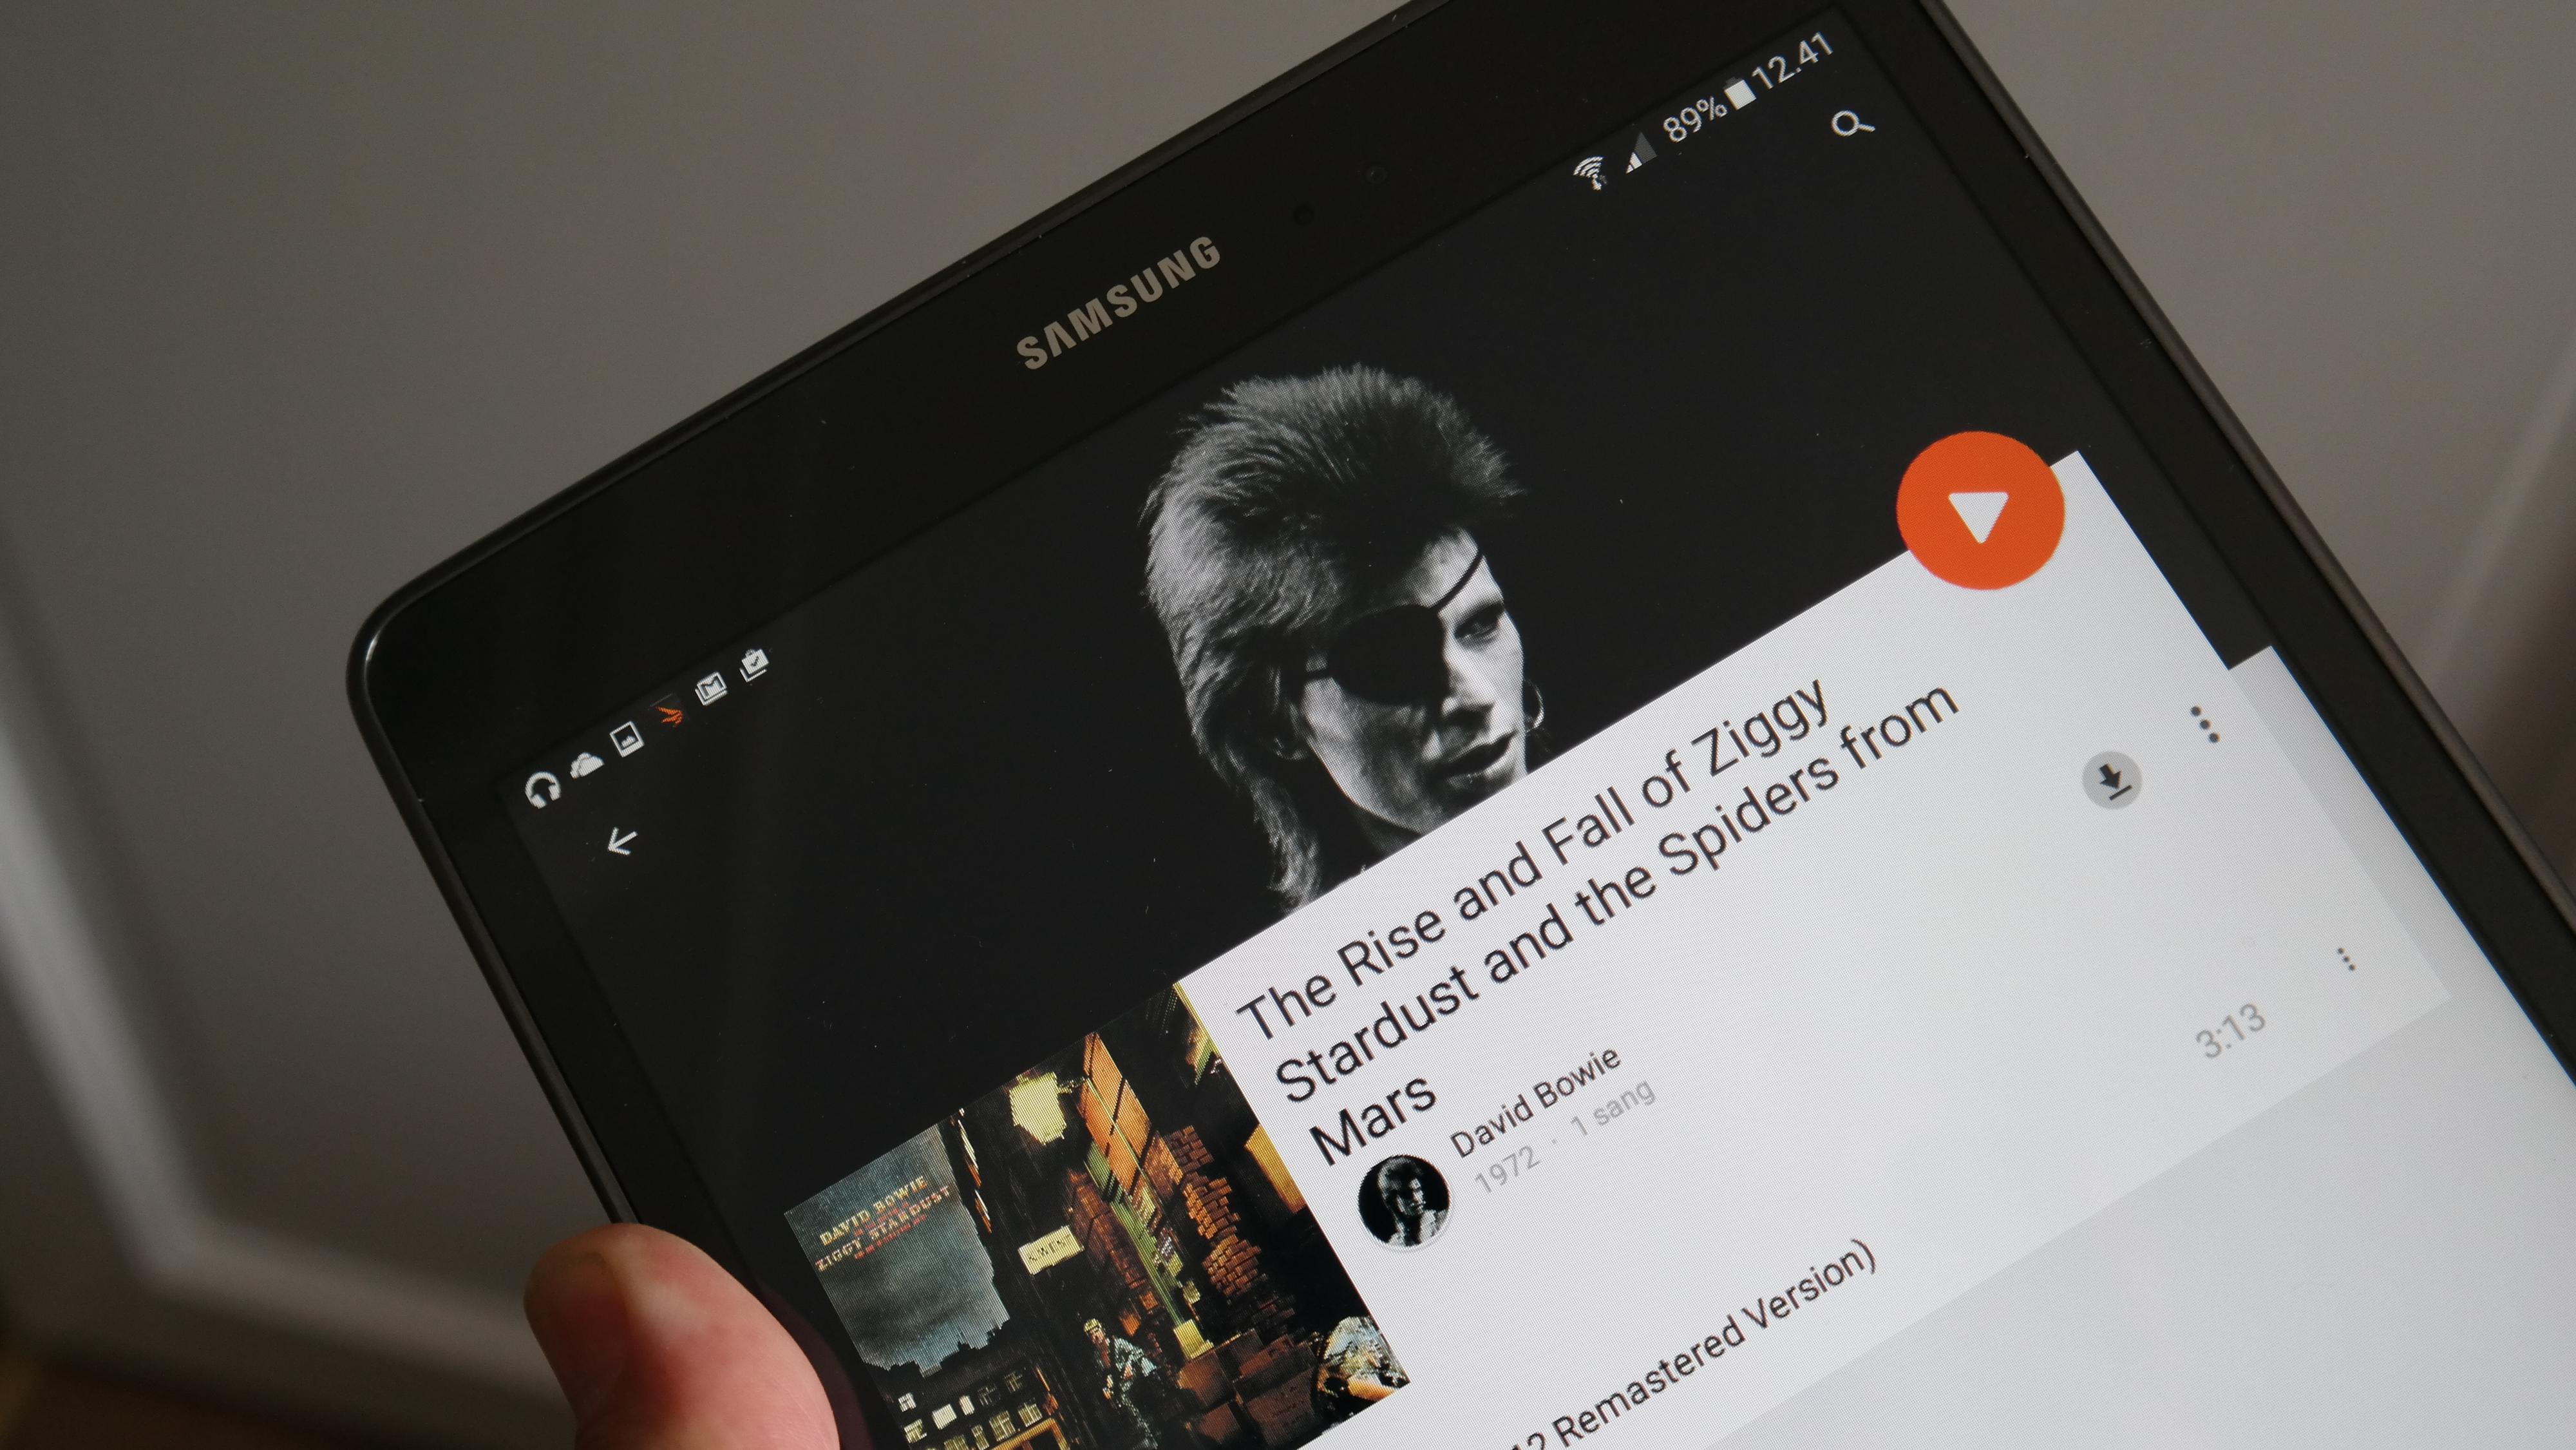 Musikkspilleren fra Google lar deg abonnere på musikk. Du kan også bruke Samsungs egen musikkspiller, eller laste ned andre musikk-apper. Foto: Espen Irwing Swang, Tek.no